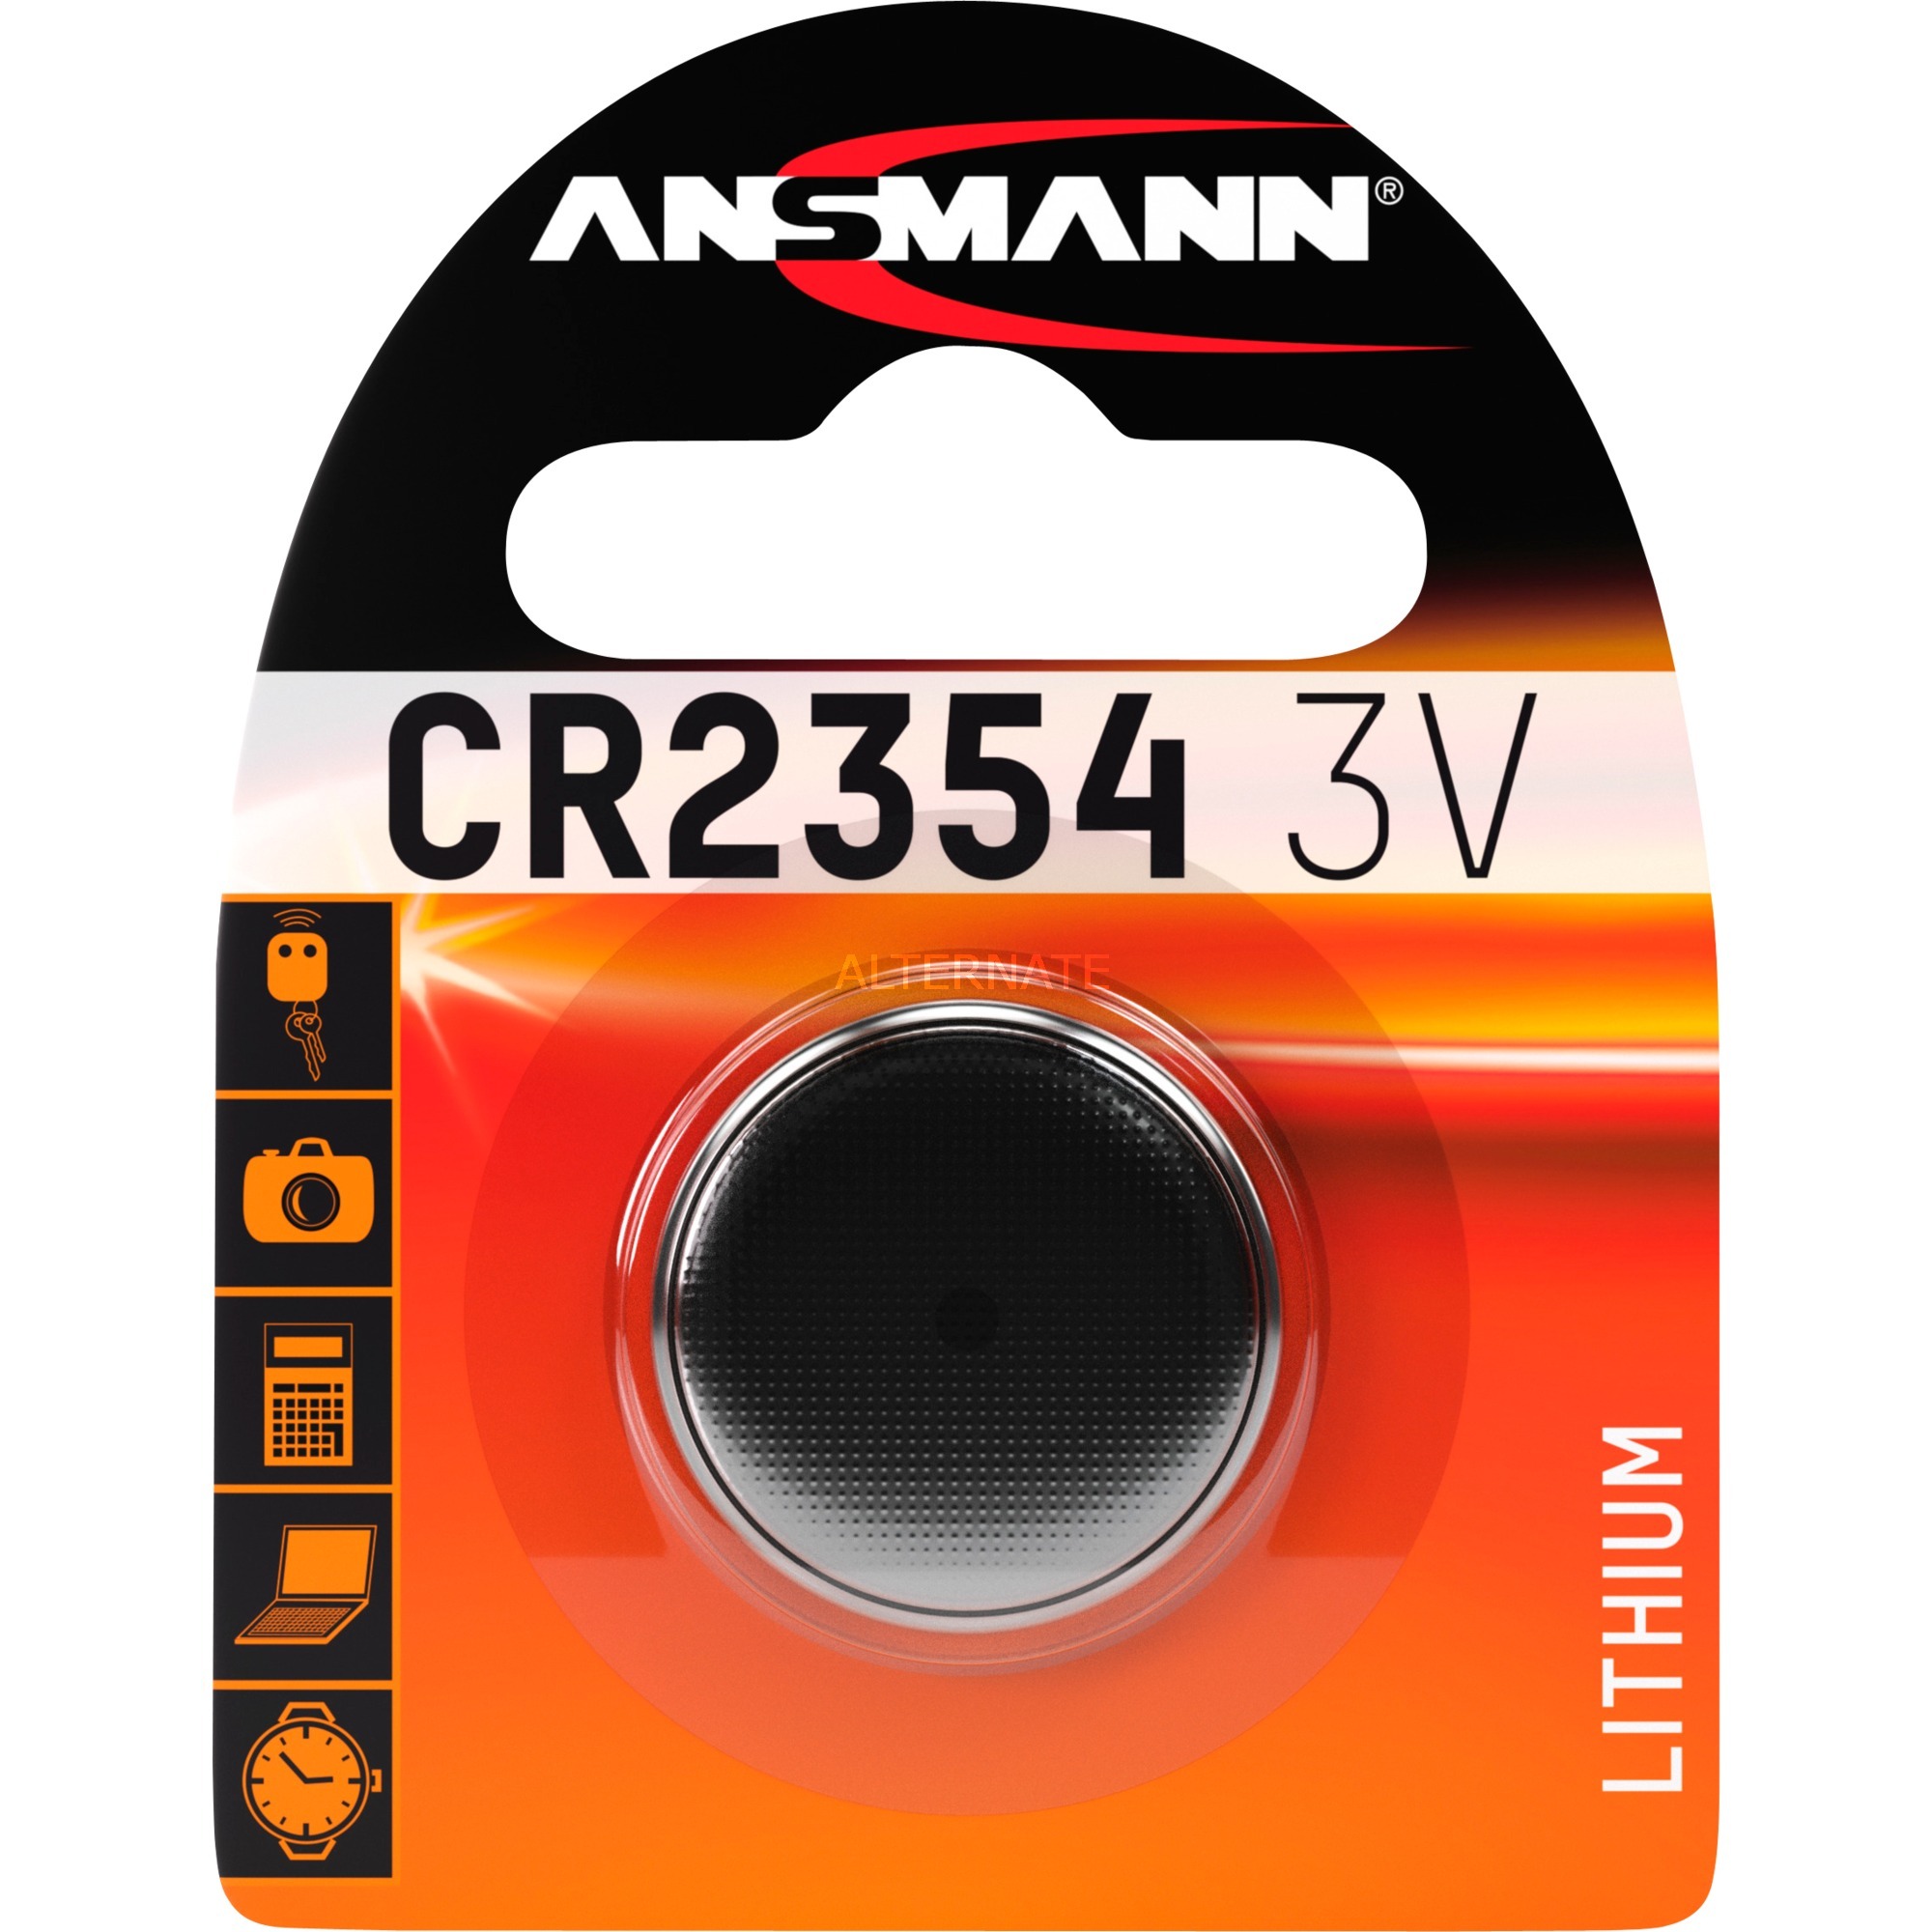 Image of Alternate - Lithium Knopfzelle CR2354, Batterie online einkaufen bei Alternate